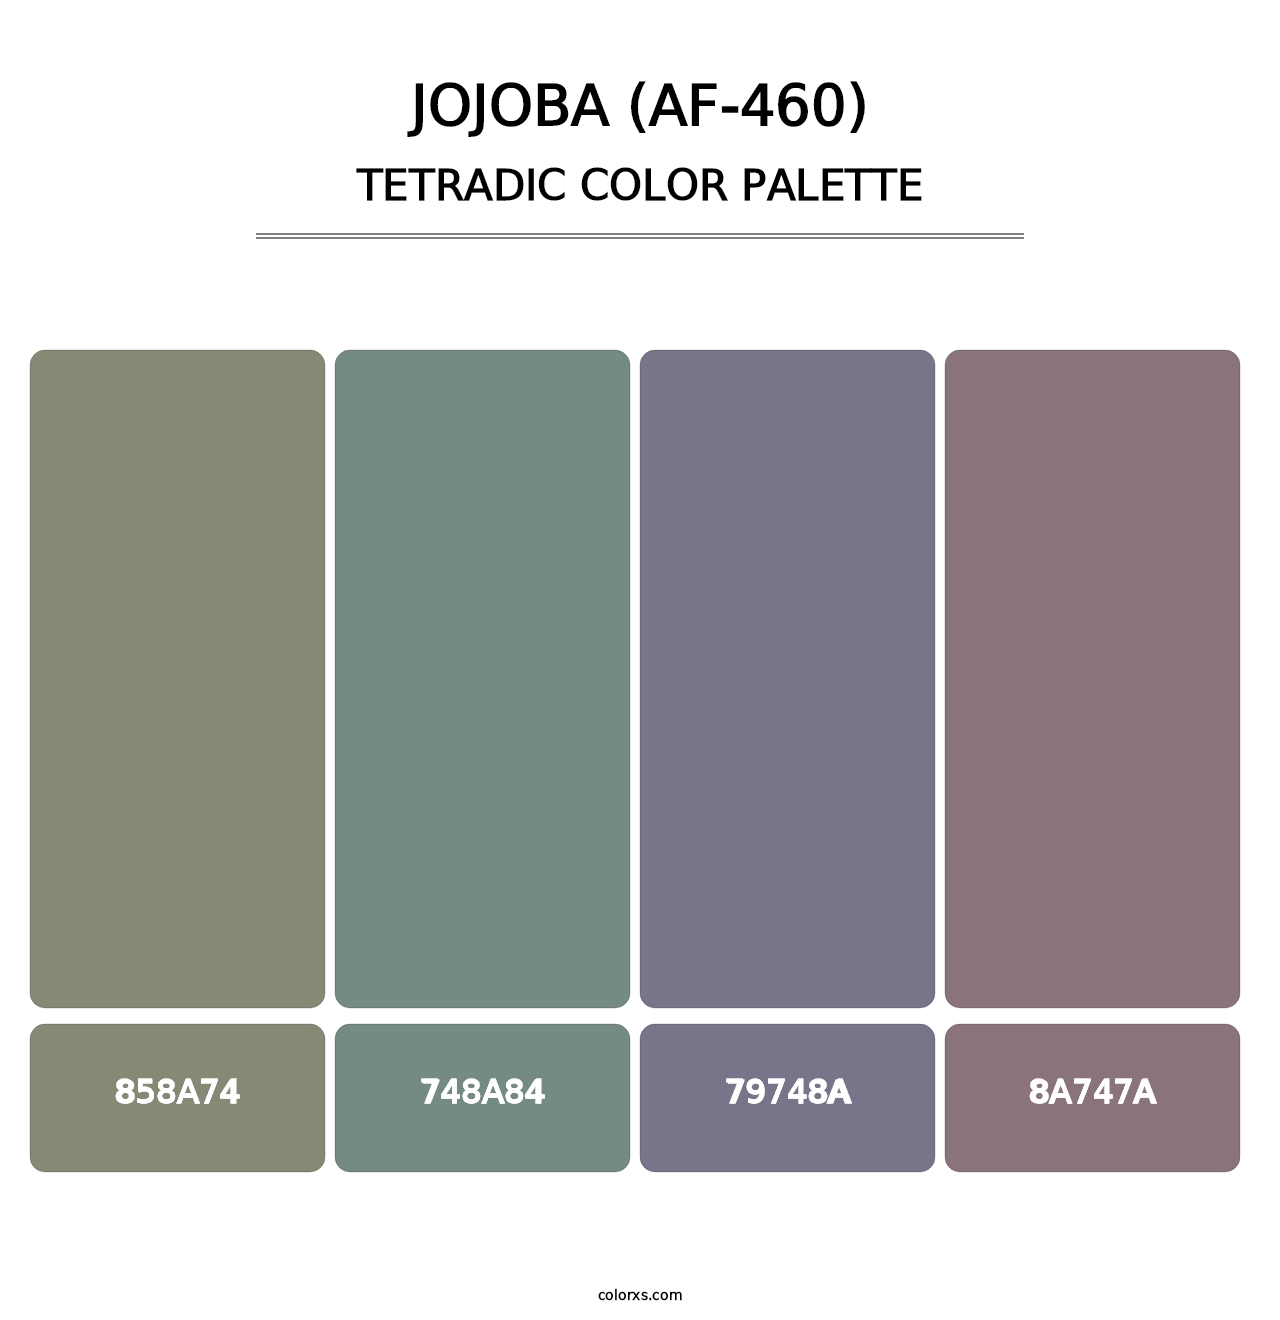 Jojoba (AF-460) - Tetradic Color Palette